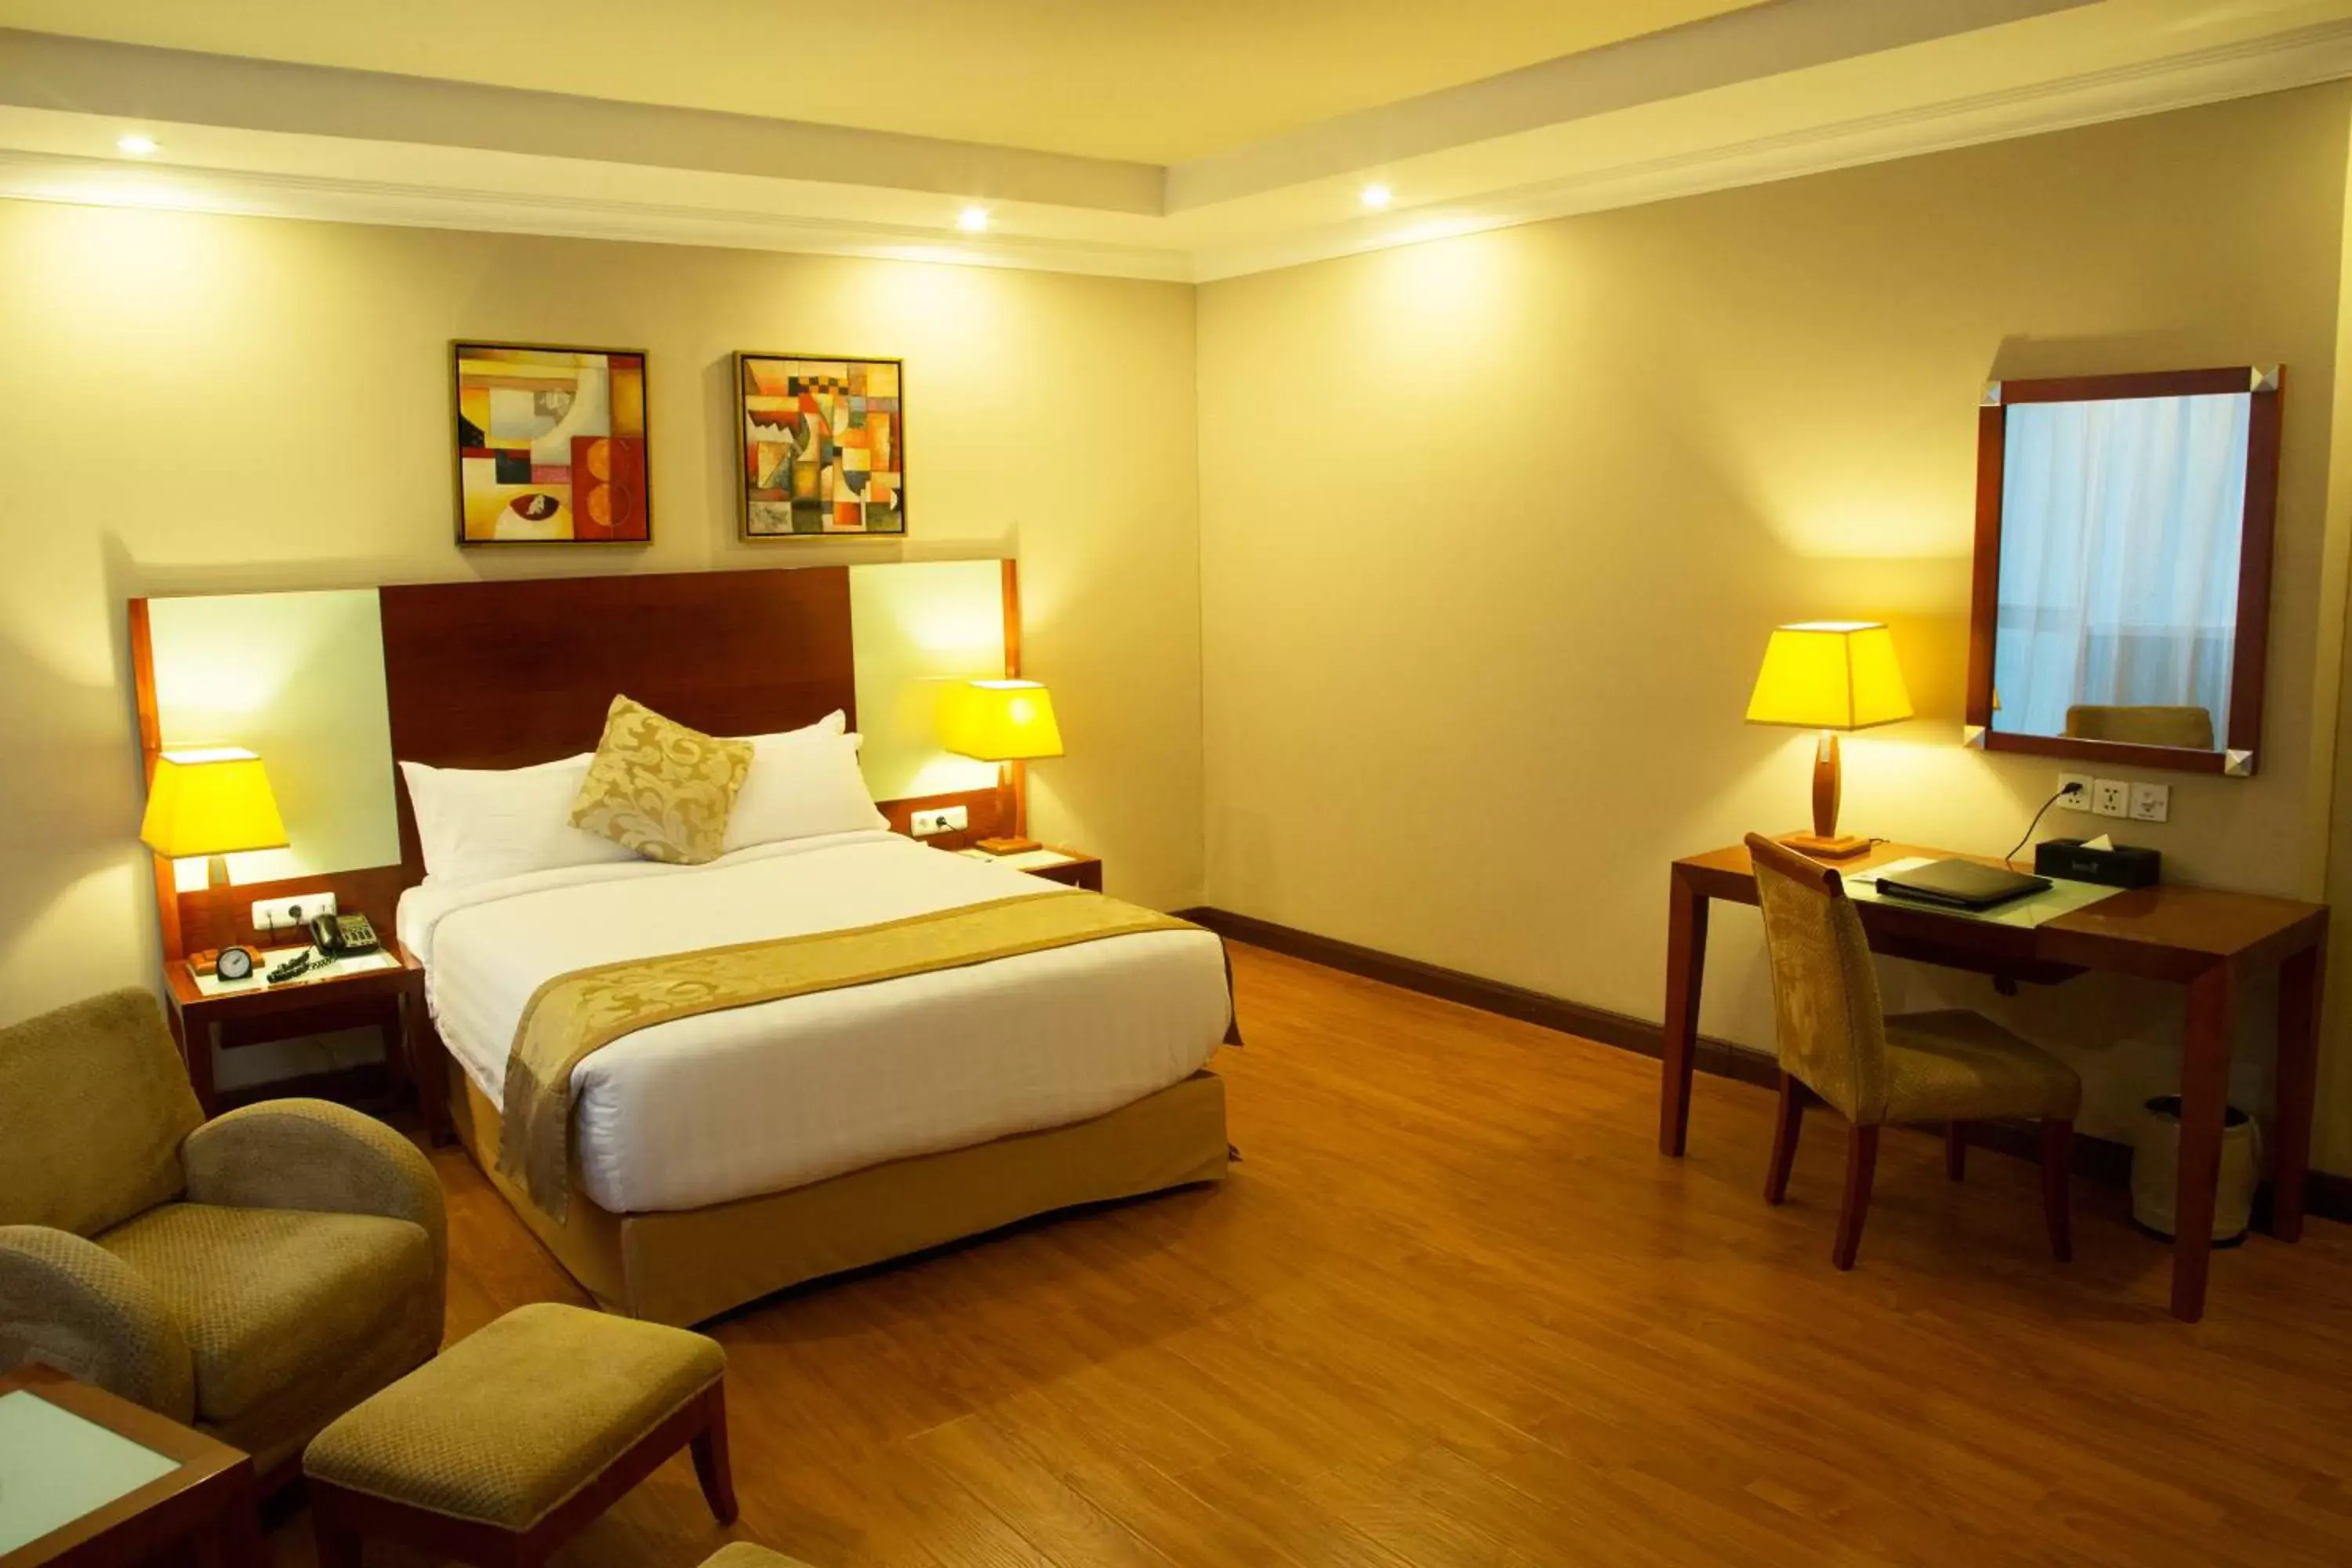 Bedroom in Jupiter International Hotel - Bole